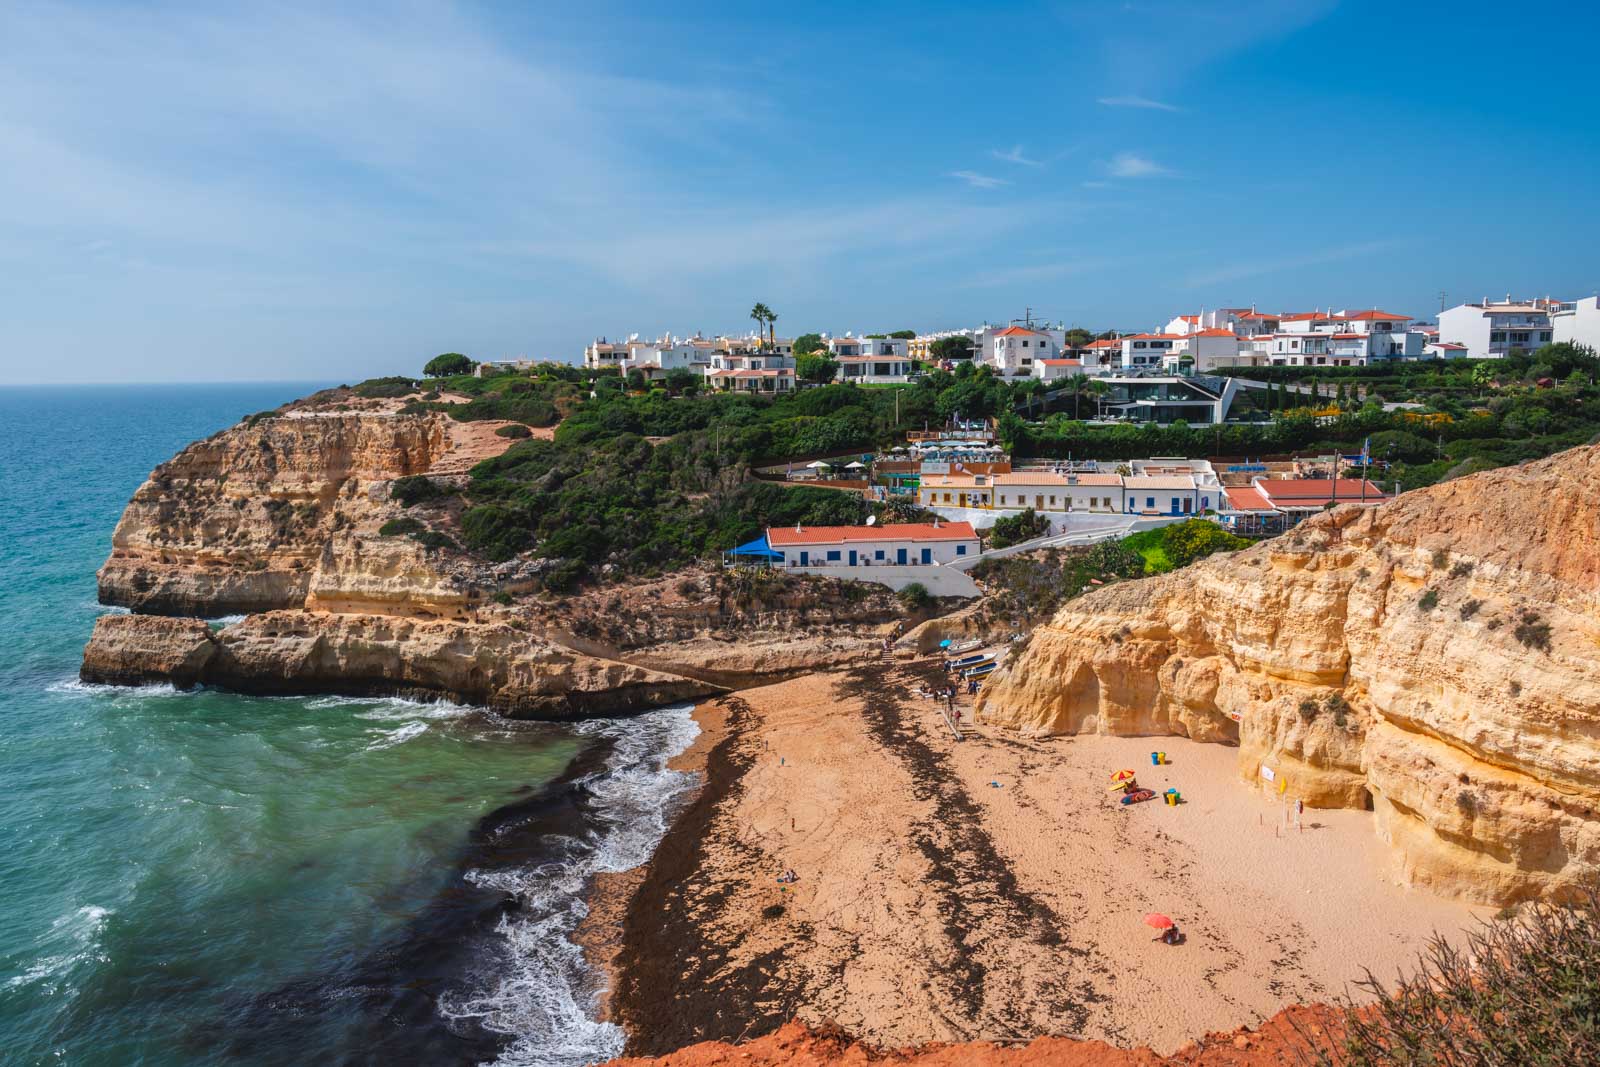 Praia de Benagil in Algarve